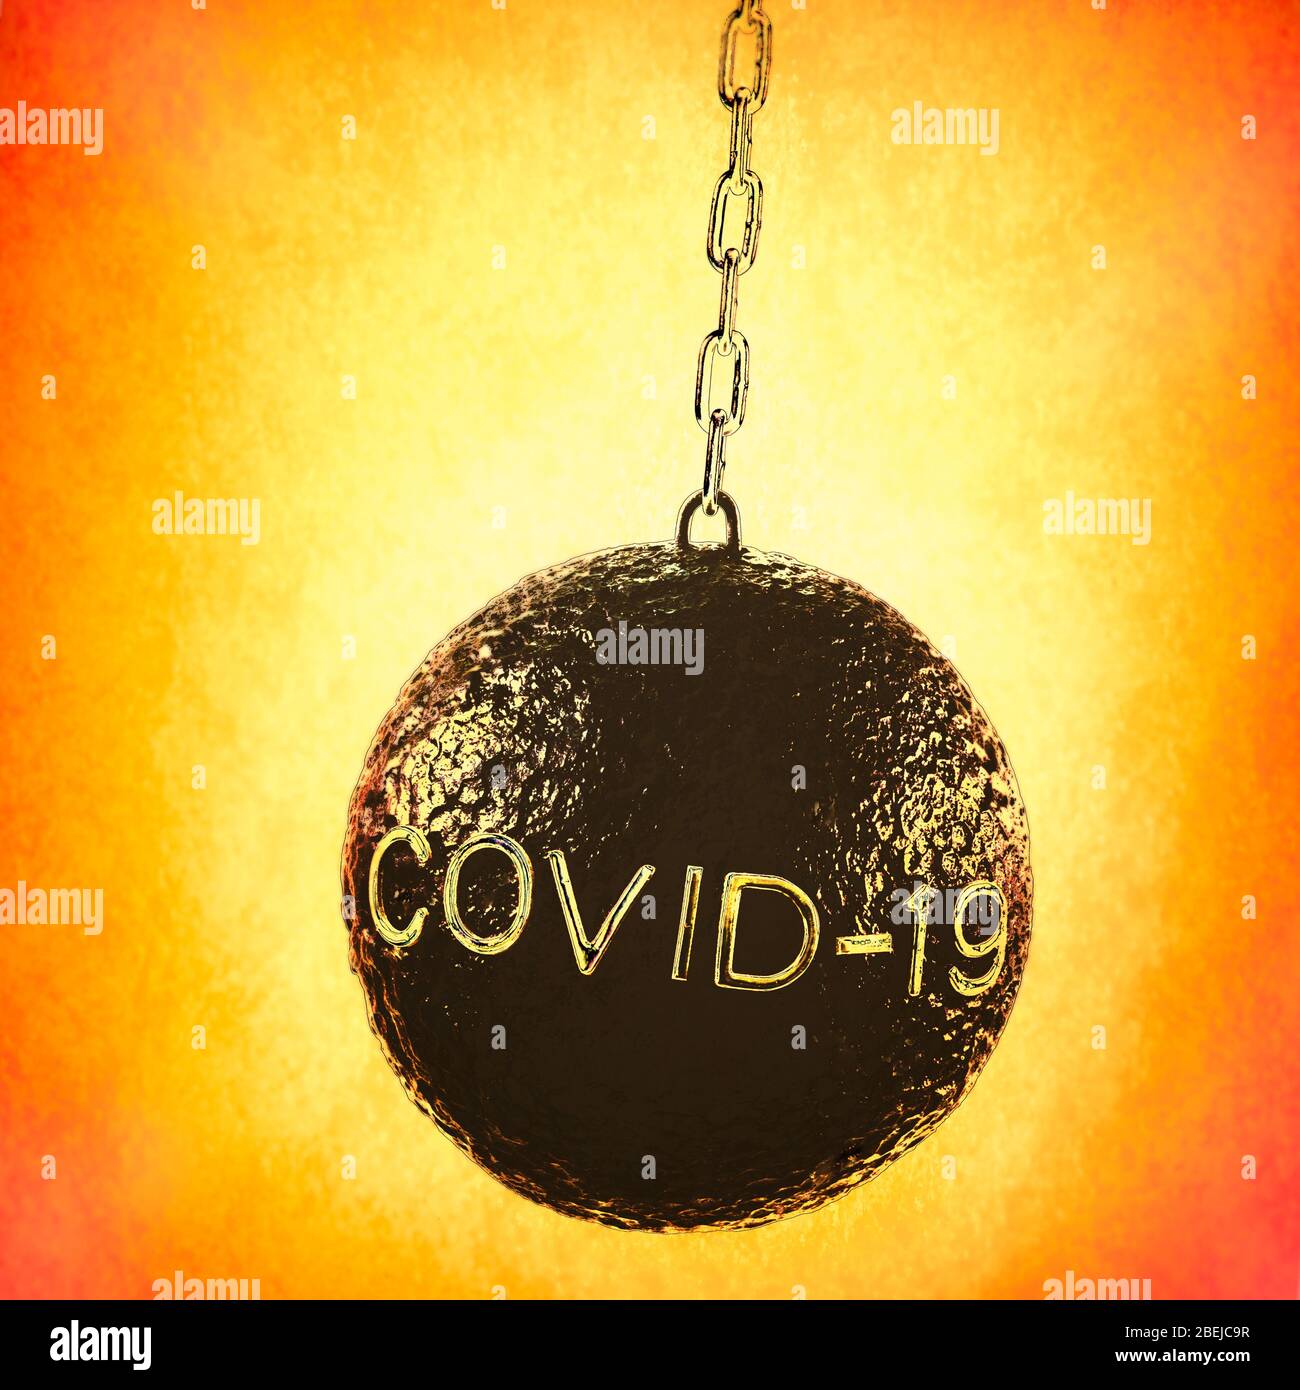 Image conceptuelle présentant une boule de naufrage illustrant l'impact de Coronavirus COVID-19 sur les finances et la santé dans l'économie plus large. Banque D'Images